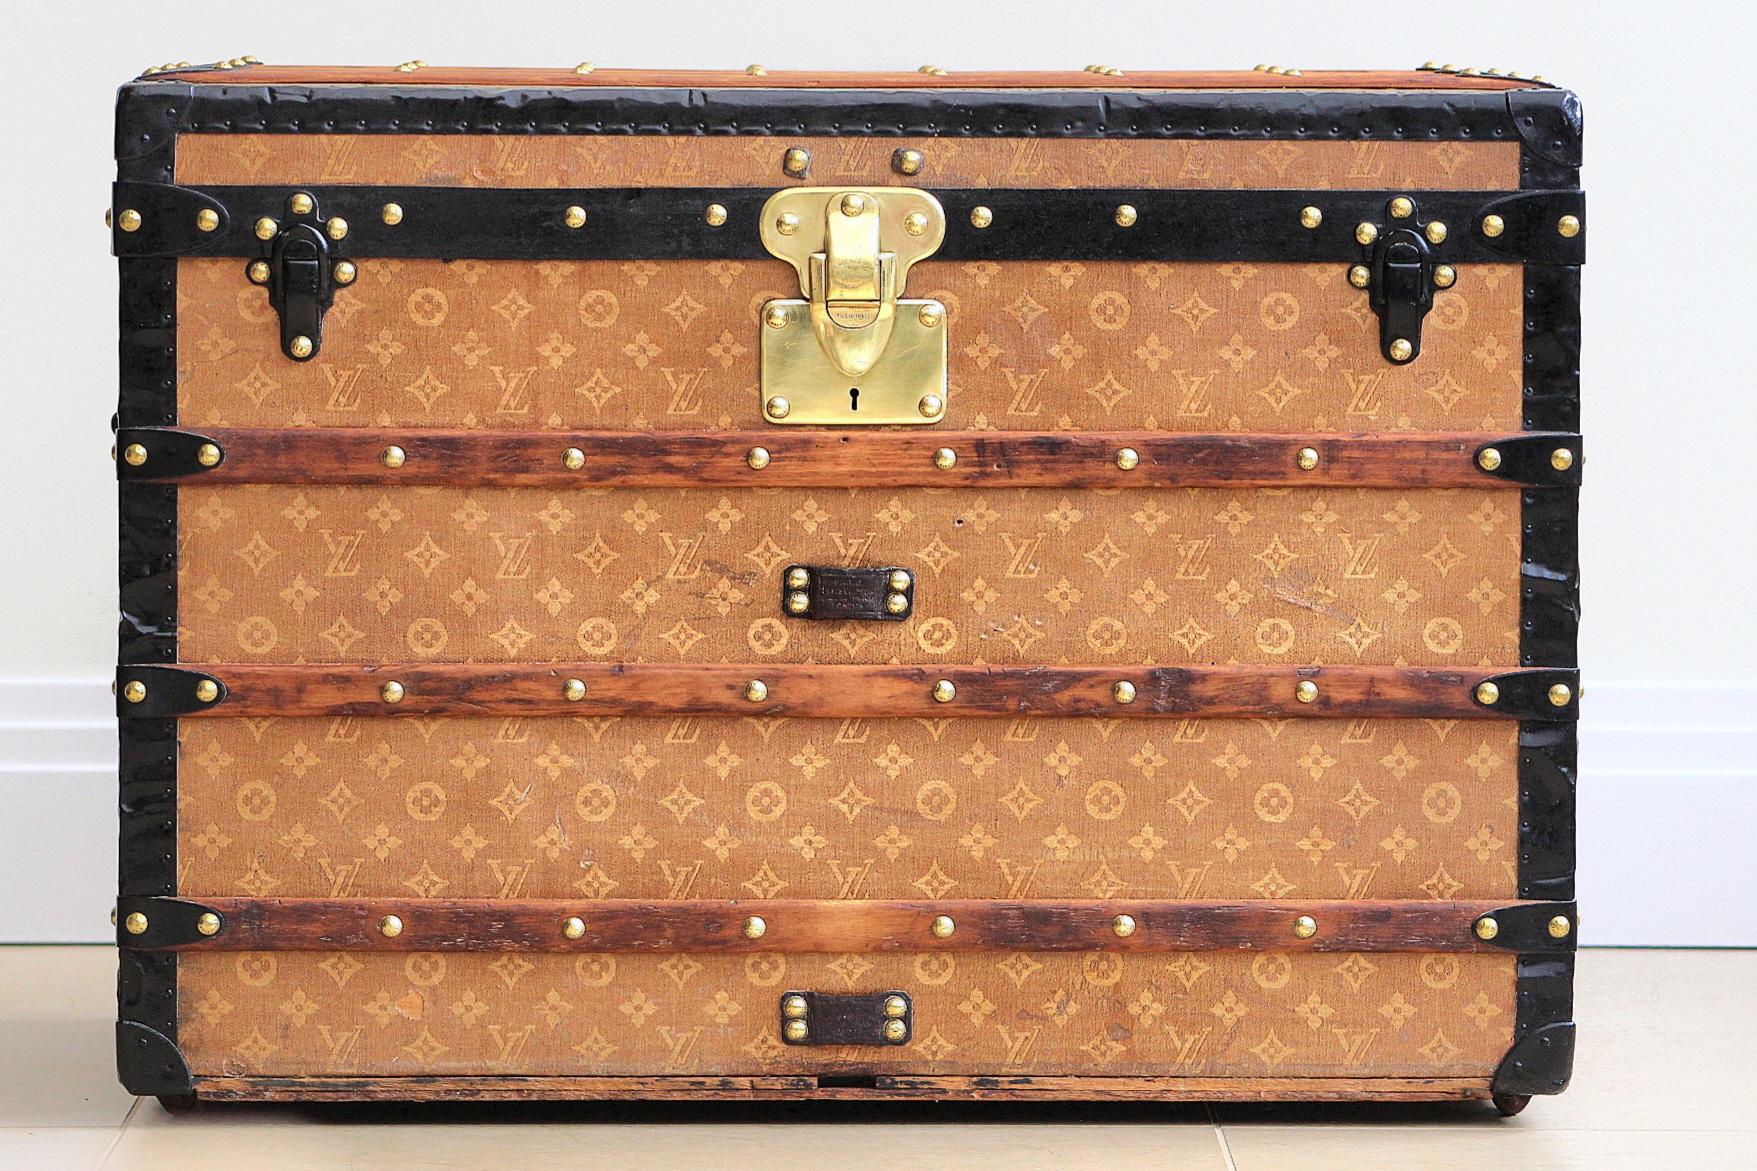 Betreten Sie das Reich der zeitlosen Eleganz mit dieser exquisiten Louis Vuitton Courier Trunk, einem prächtigen Relikt aus den 1890er Jahren, das die Essenz luxuriösen Reisens und raffinierter Handwerkskunst verkörpert. Dieses edle Stück ist ein